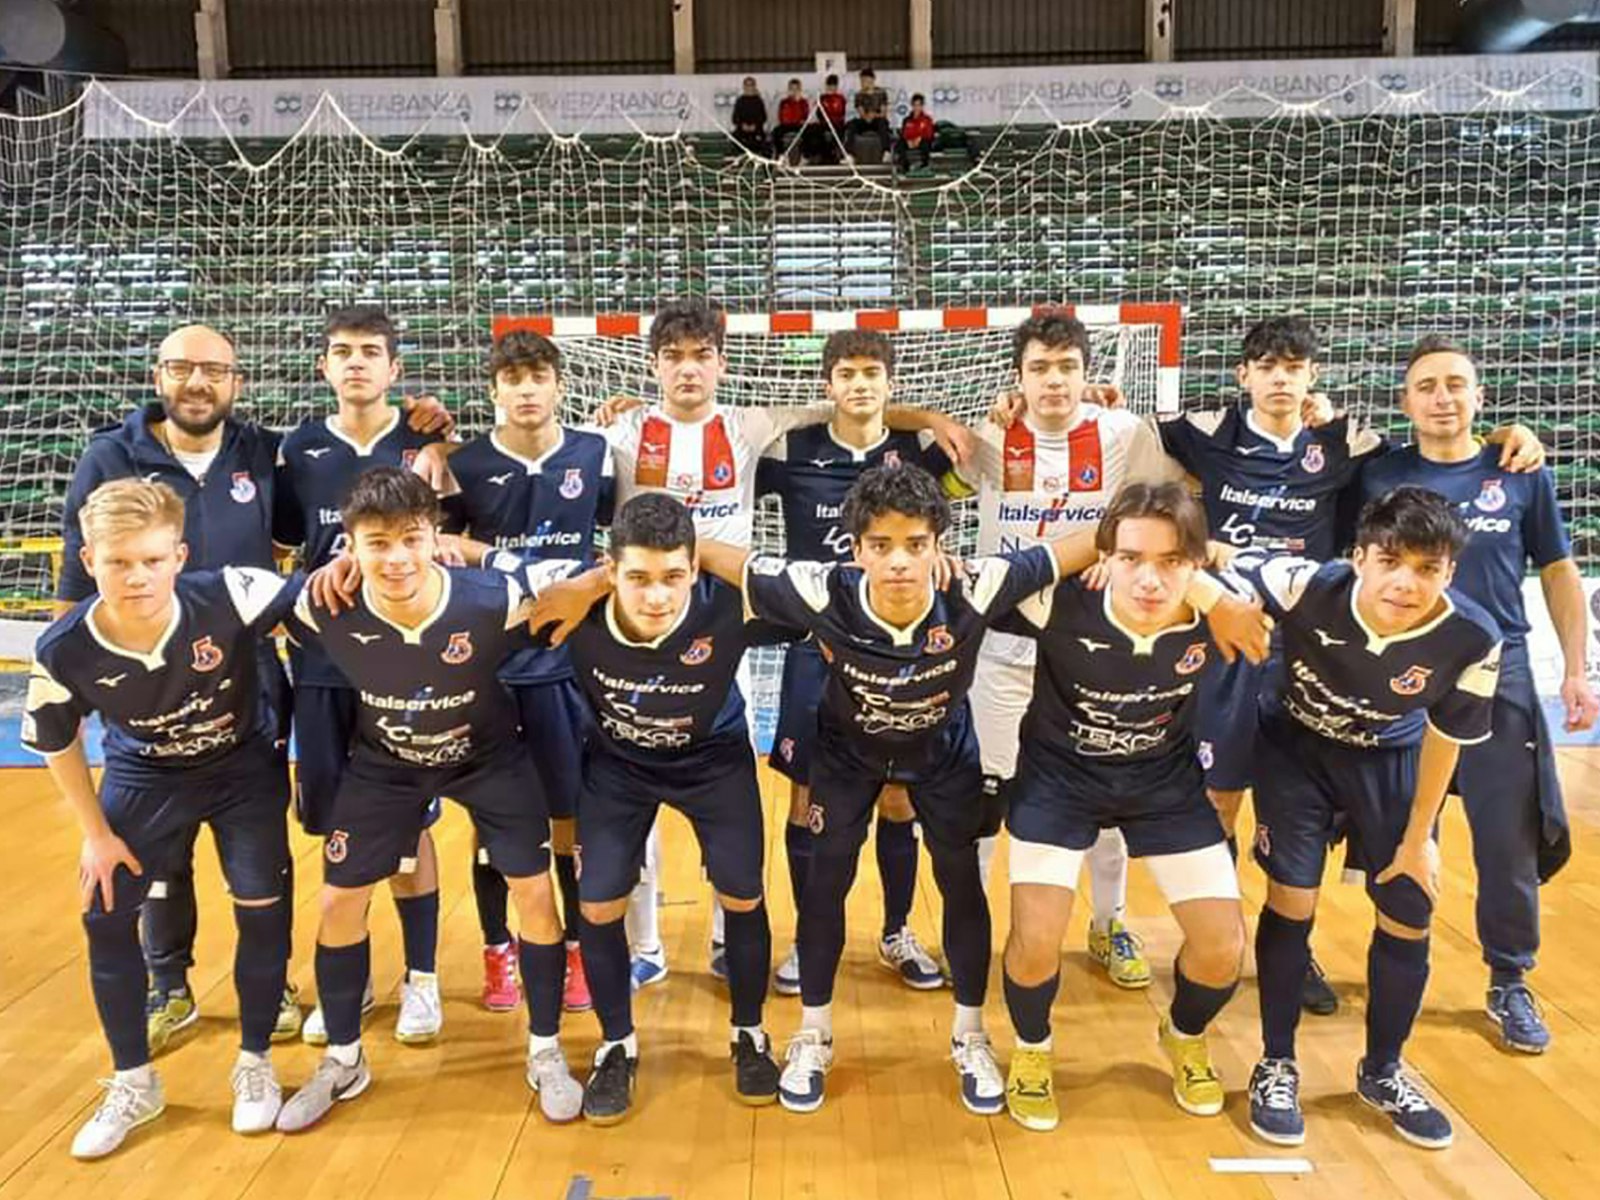 Pesaron U19-joukkue on esittänyt viime aikoina hyviä otteita. Aaro kuvassa alhaalla vasemmalla.